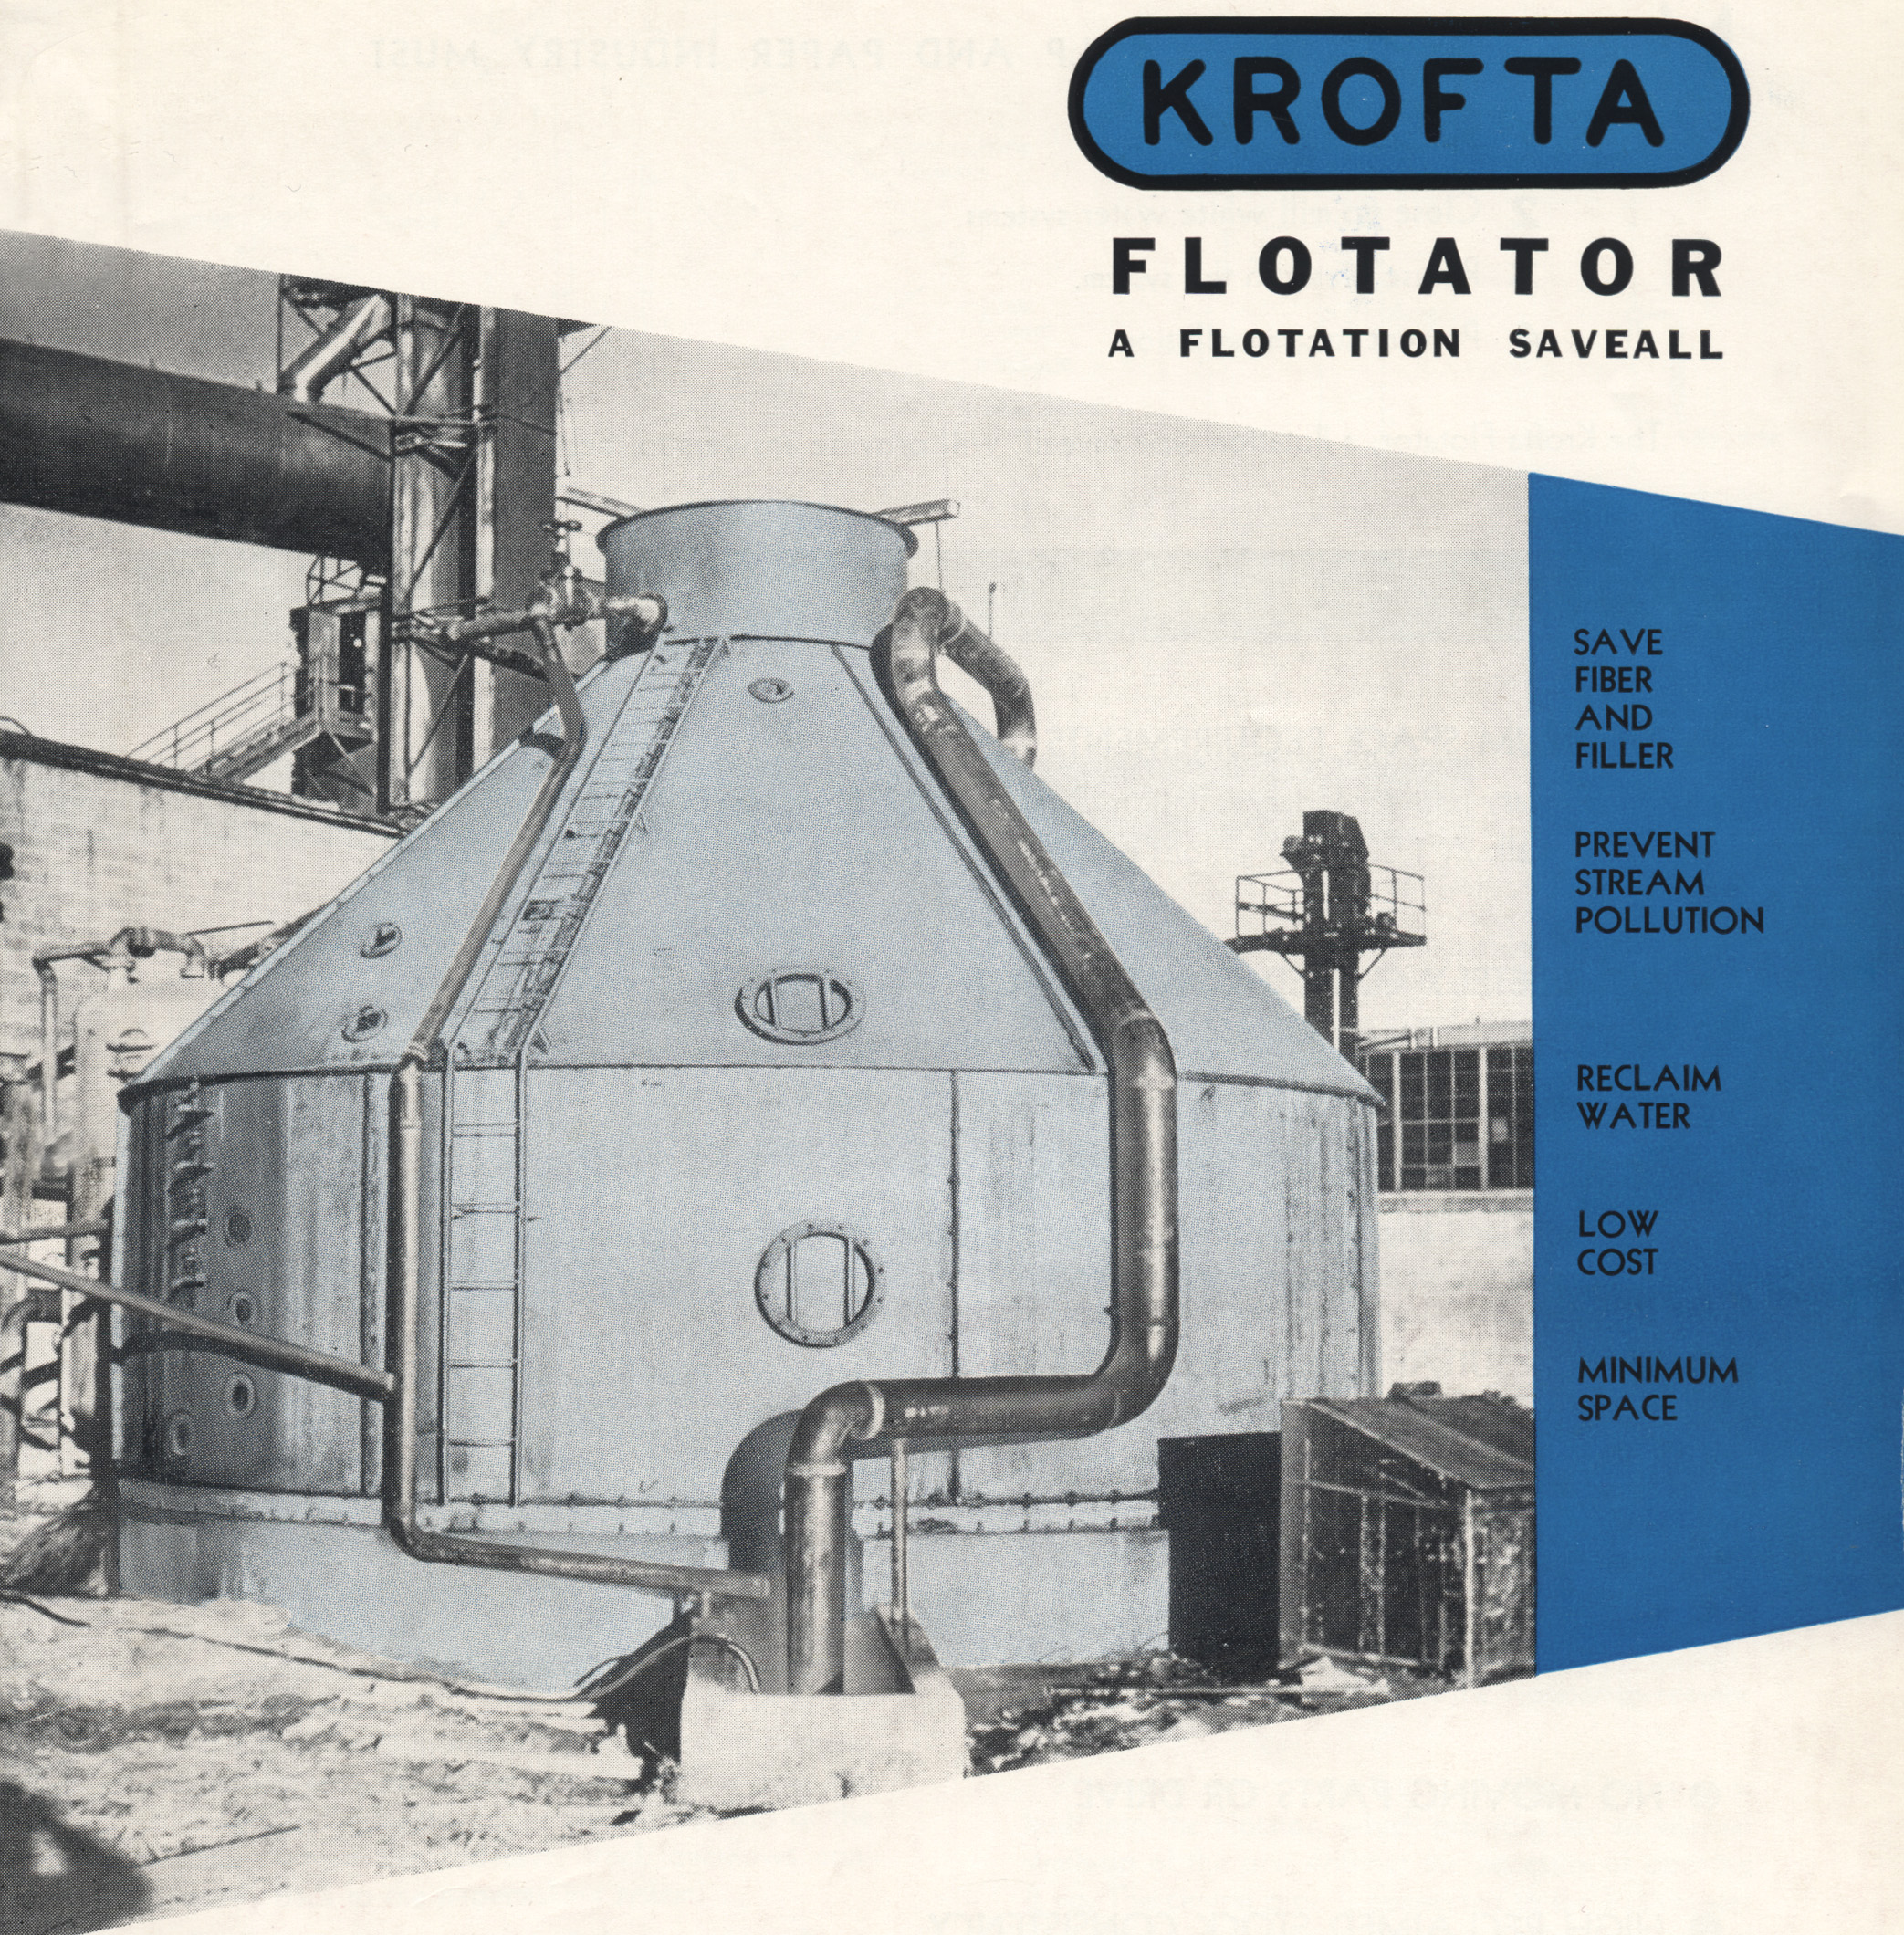 Original Krofta Flotator